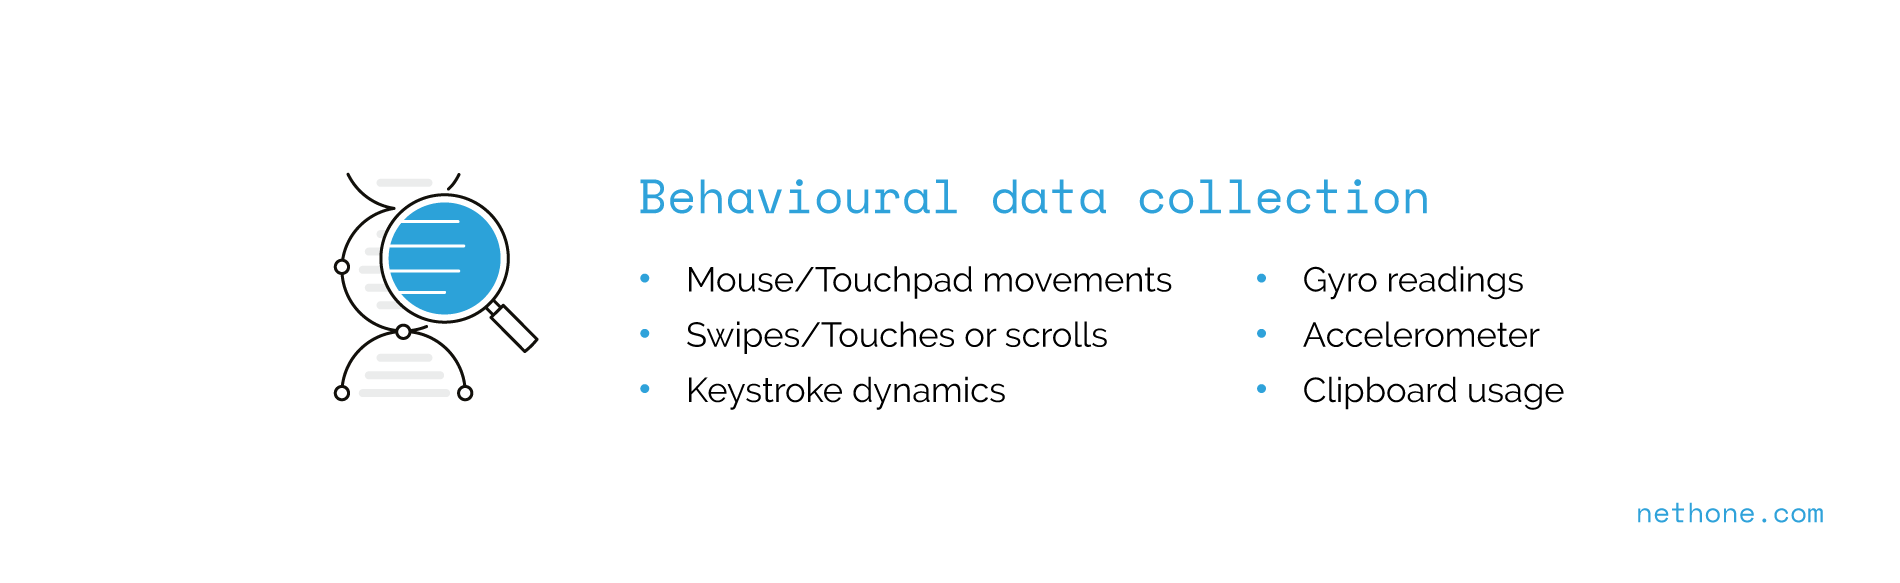 Behavioural data collection